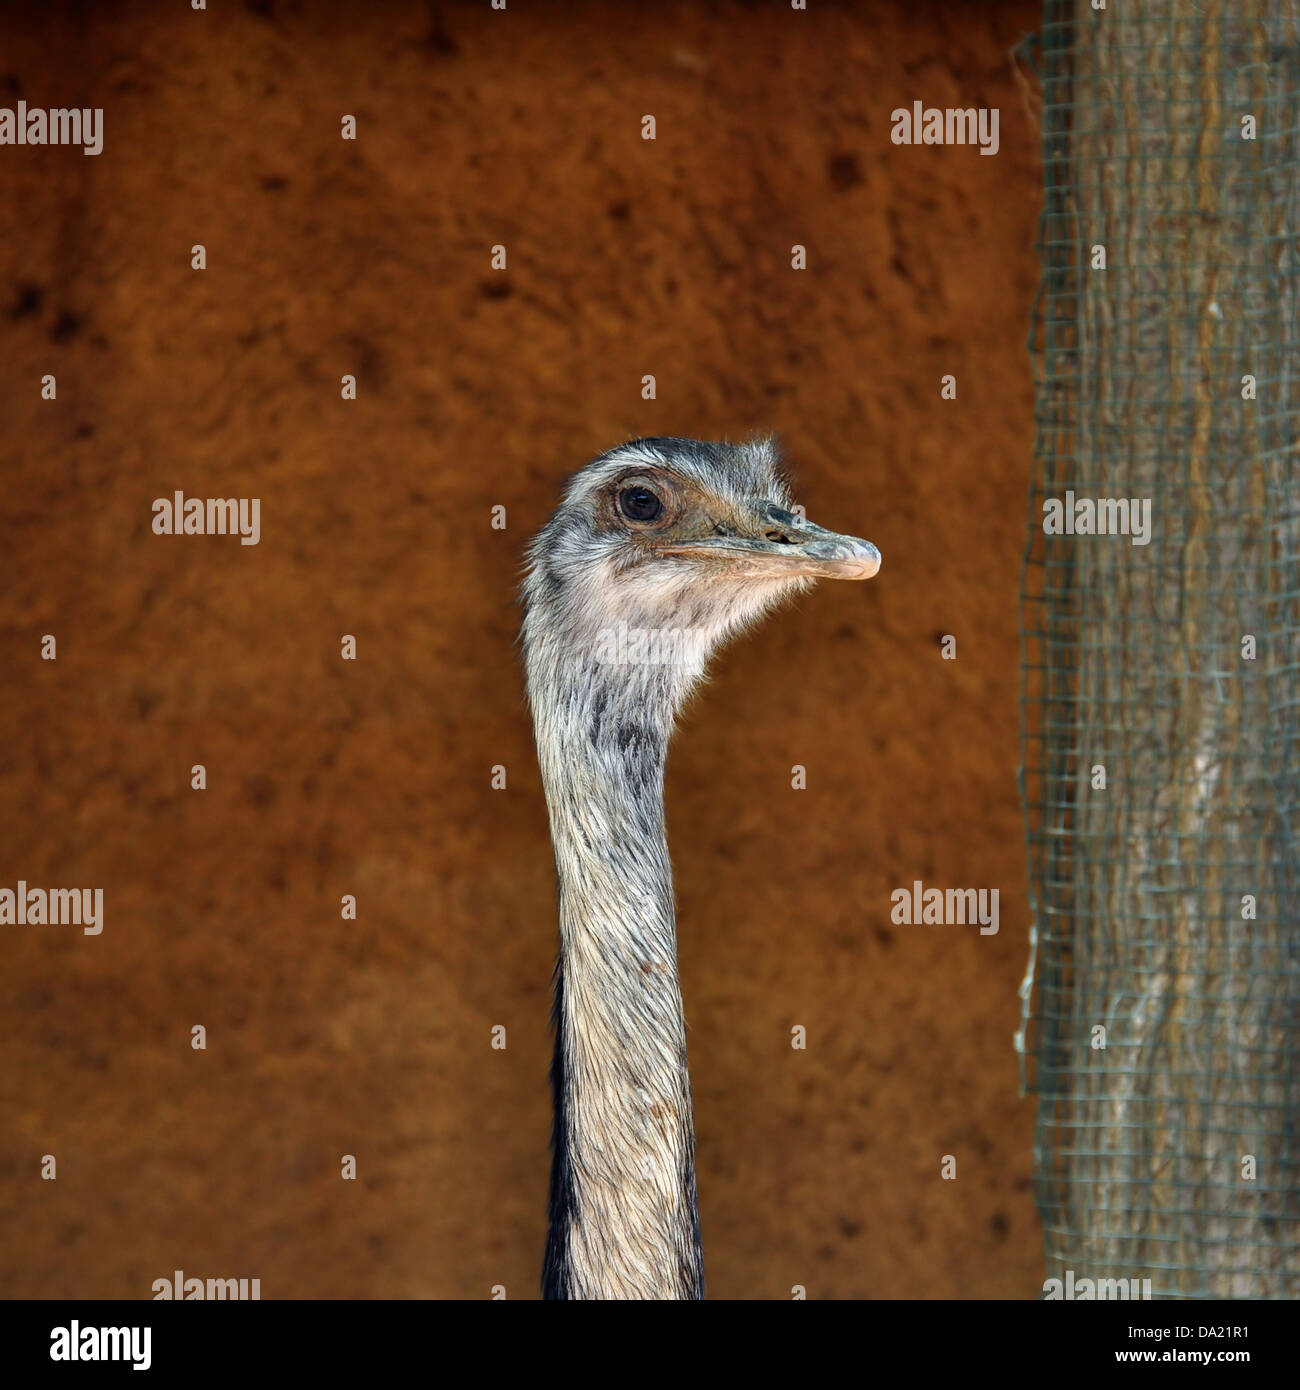 Mayor rhea ave no voladora jefe closeup. Retrato de animales. Foto de stock